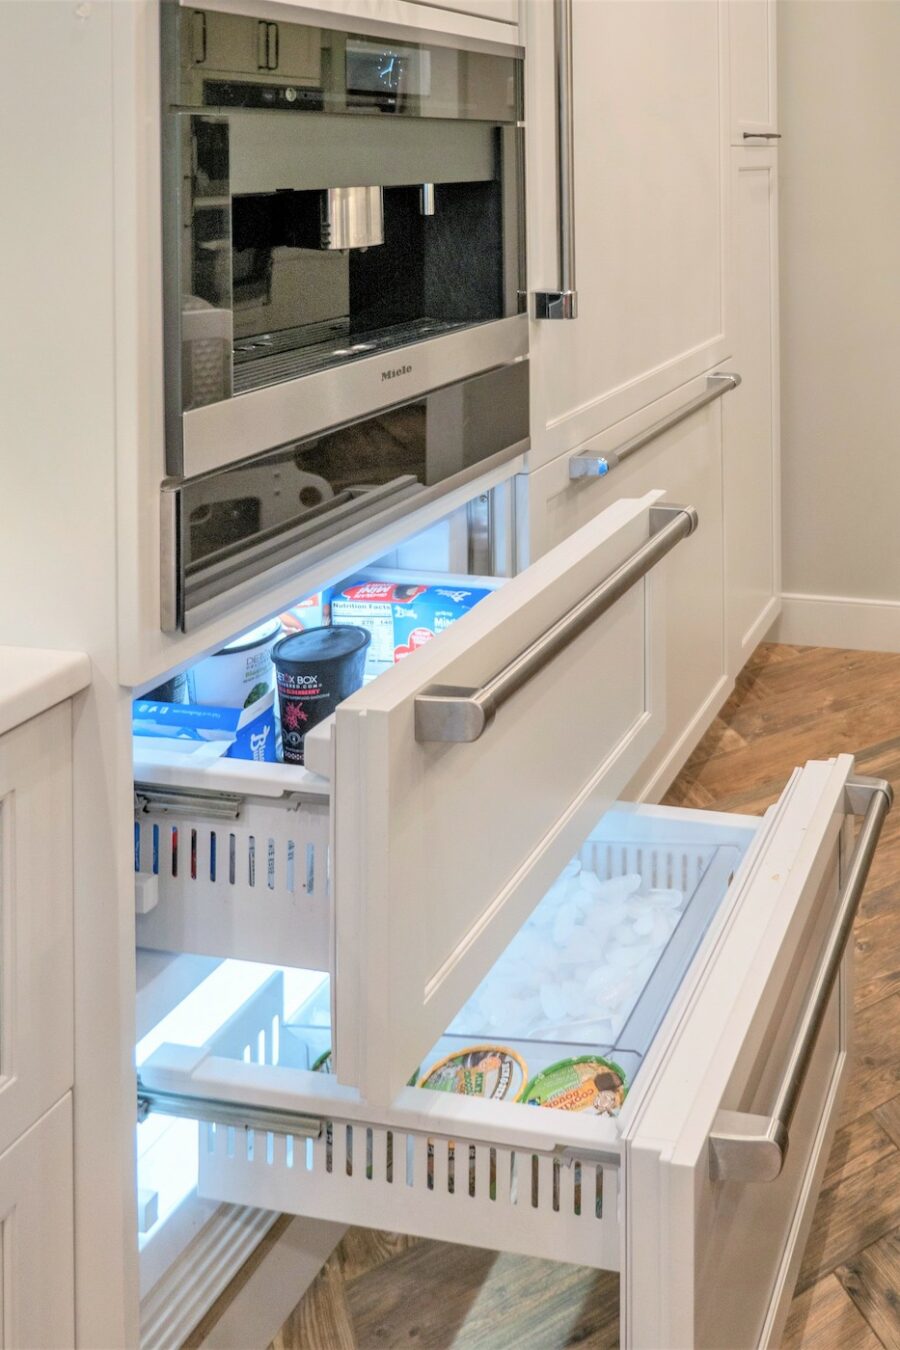 malone-ny-kitchen-freezer-drawers